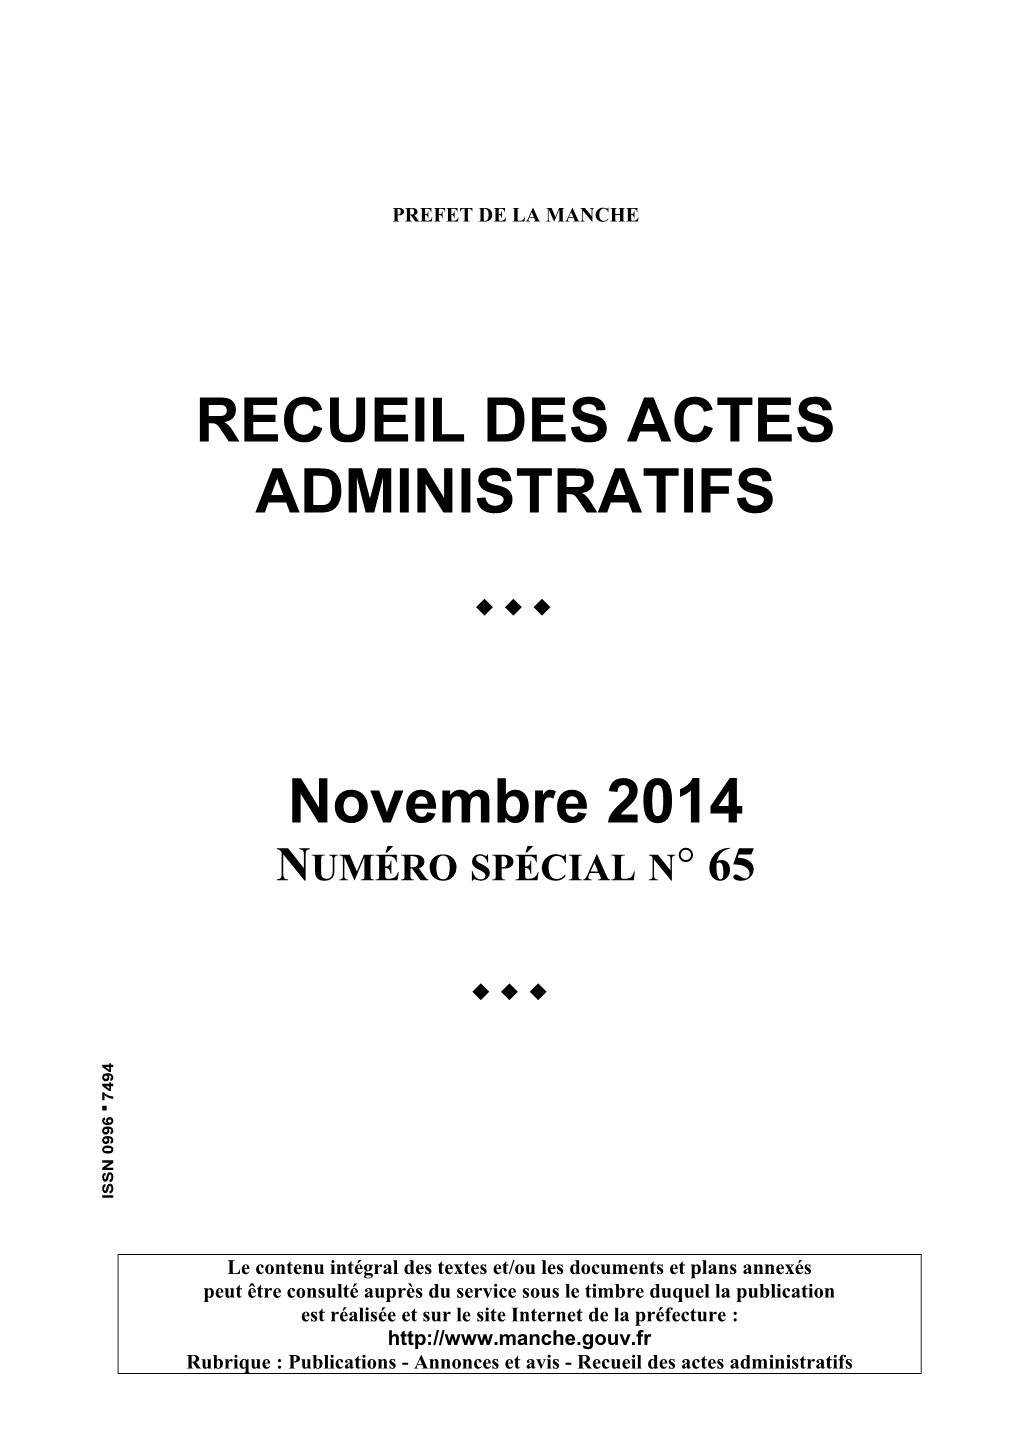 RECUEIL DES ACTES ADMINISTRATIFS Novembre 2014